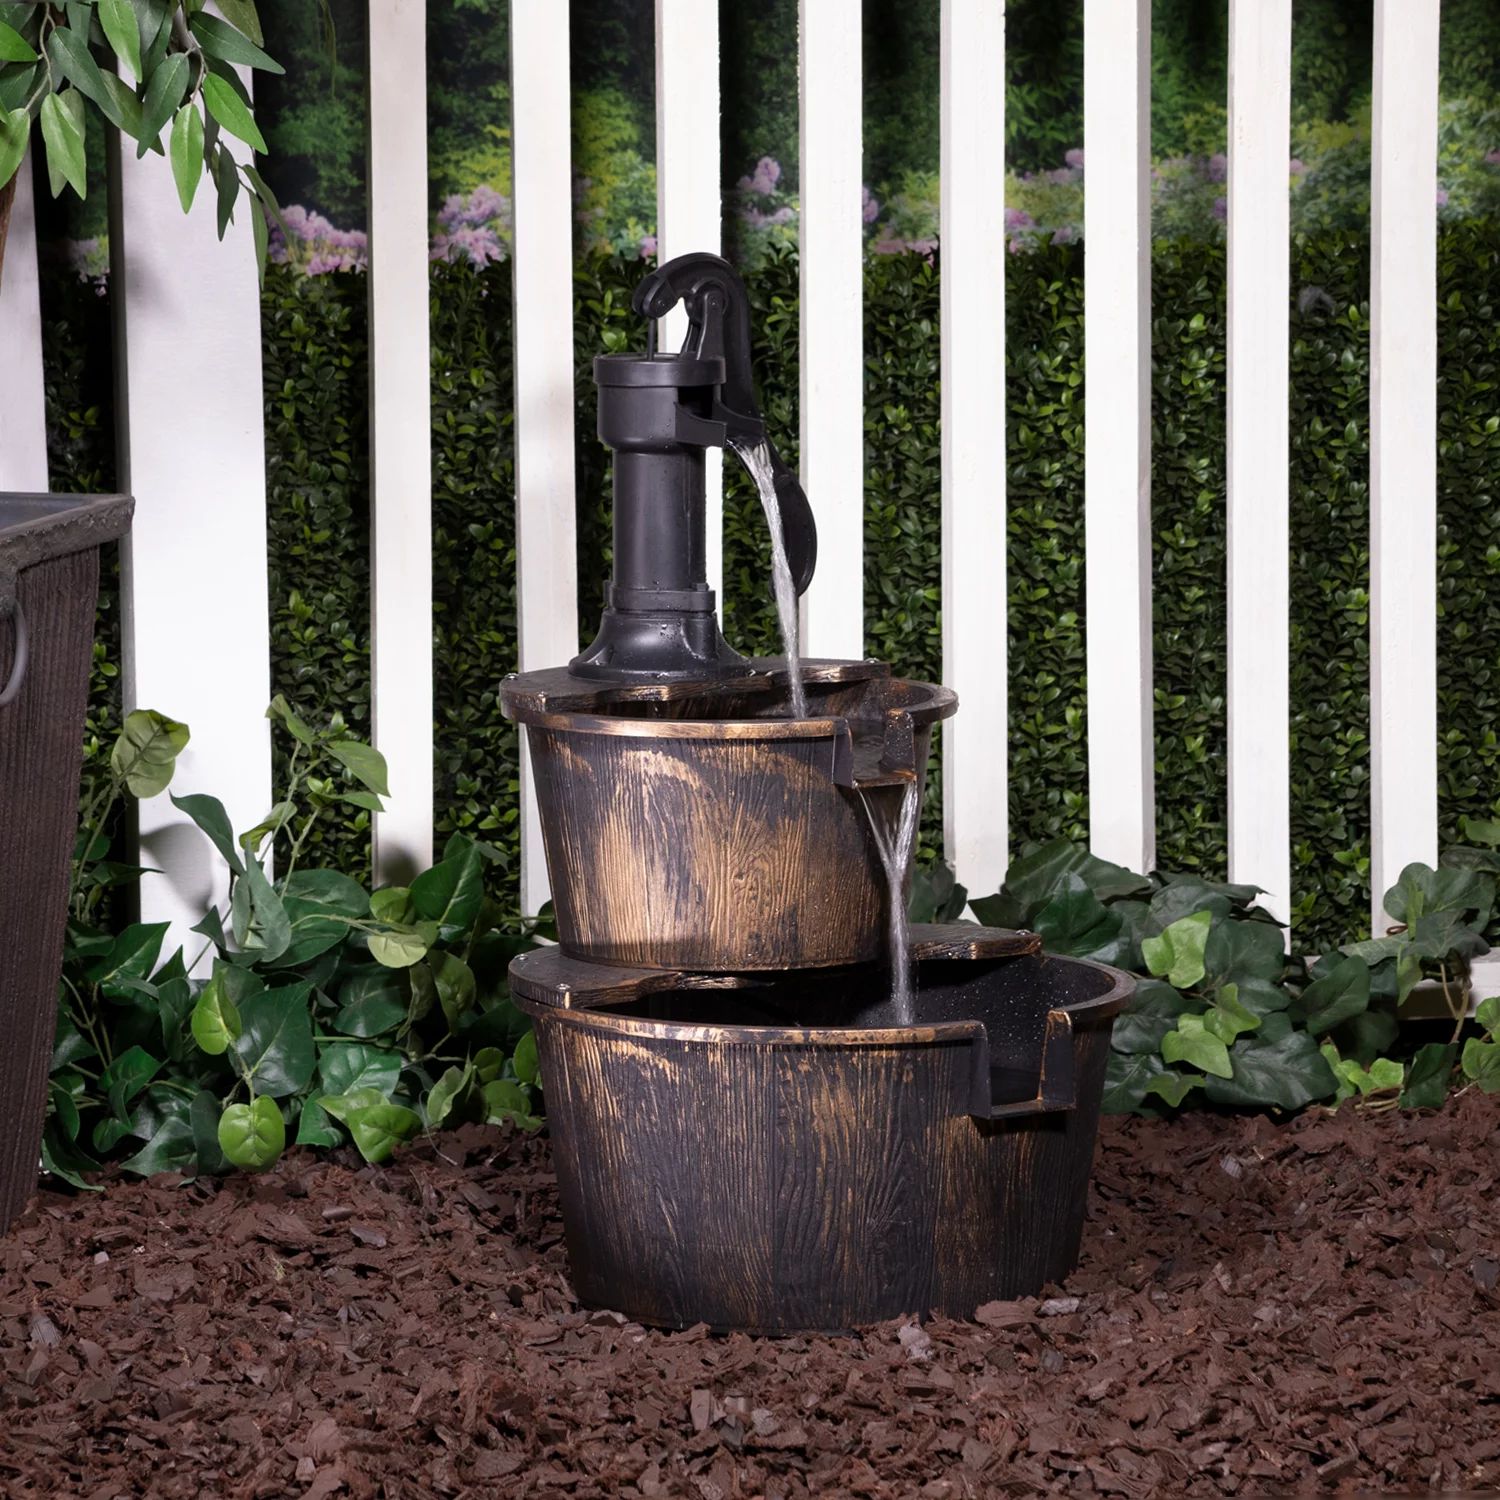 Alpine Corporation 27" Two-Tier Barrel & Pump Outdoor Fountain, Bronze | Walmart (US)